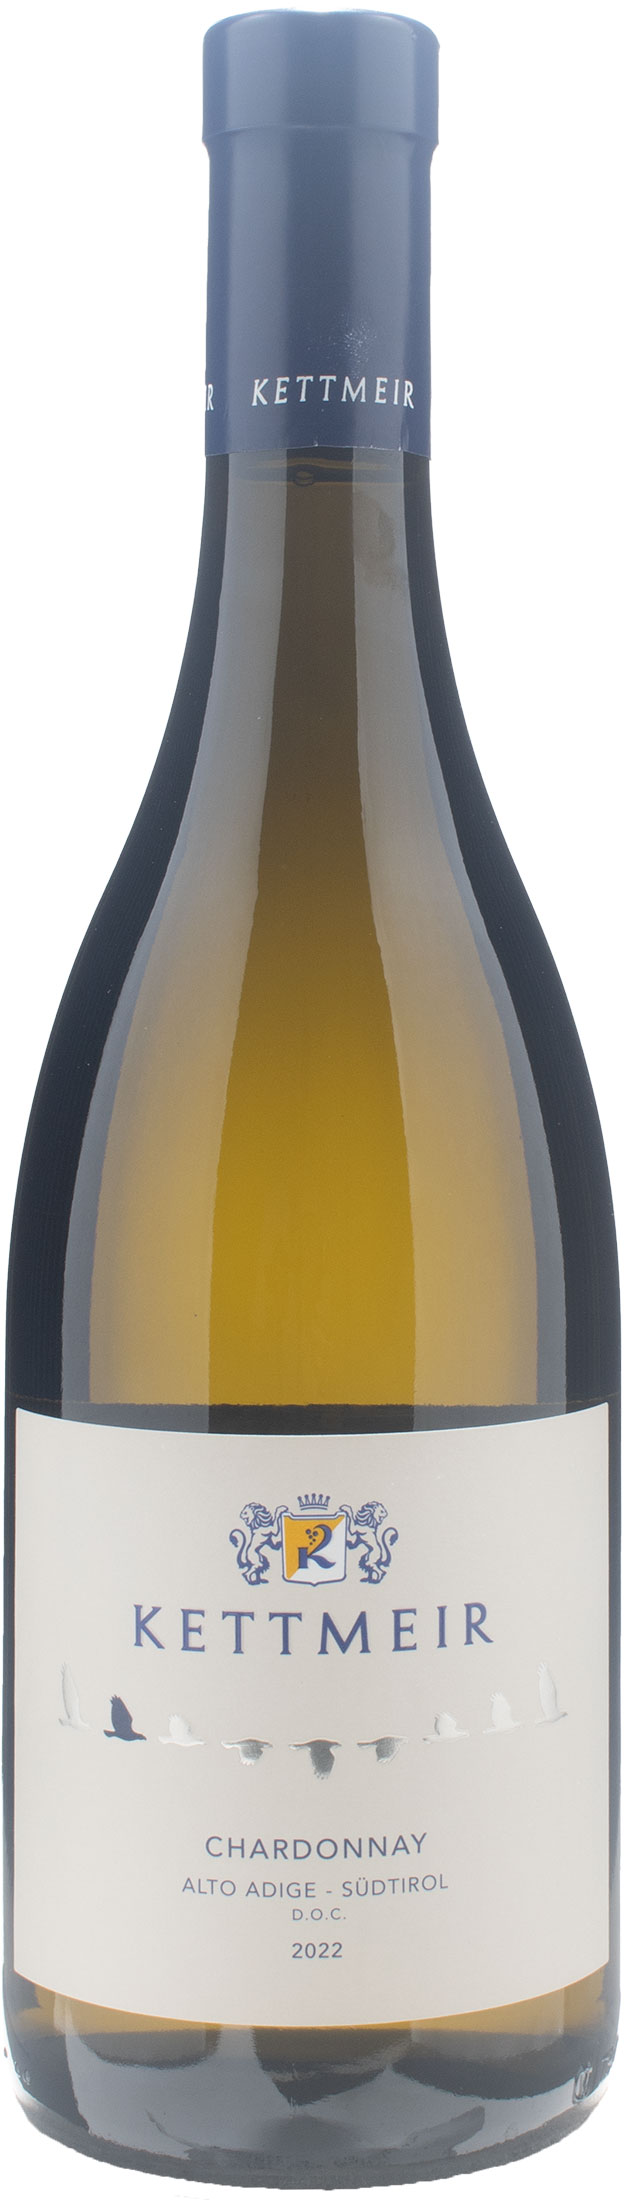 Kettmeir Alto Adige Chardonnay 2022